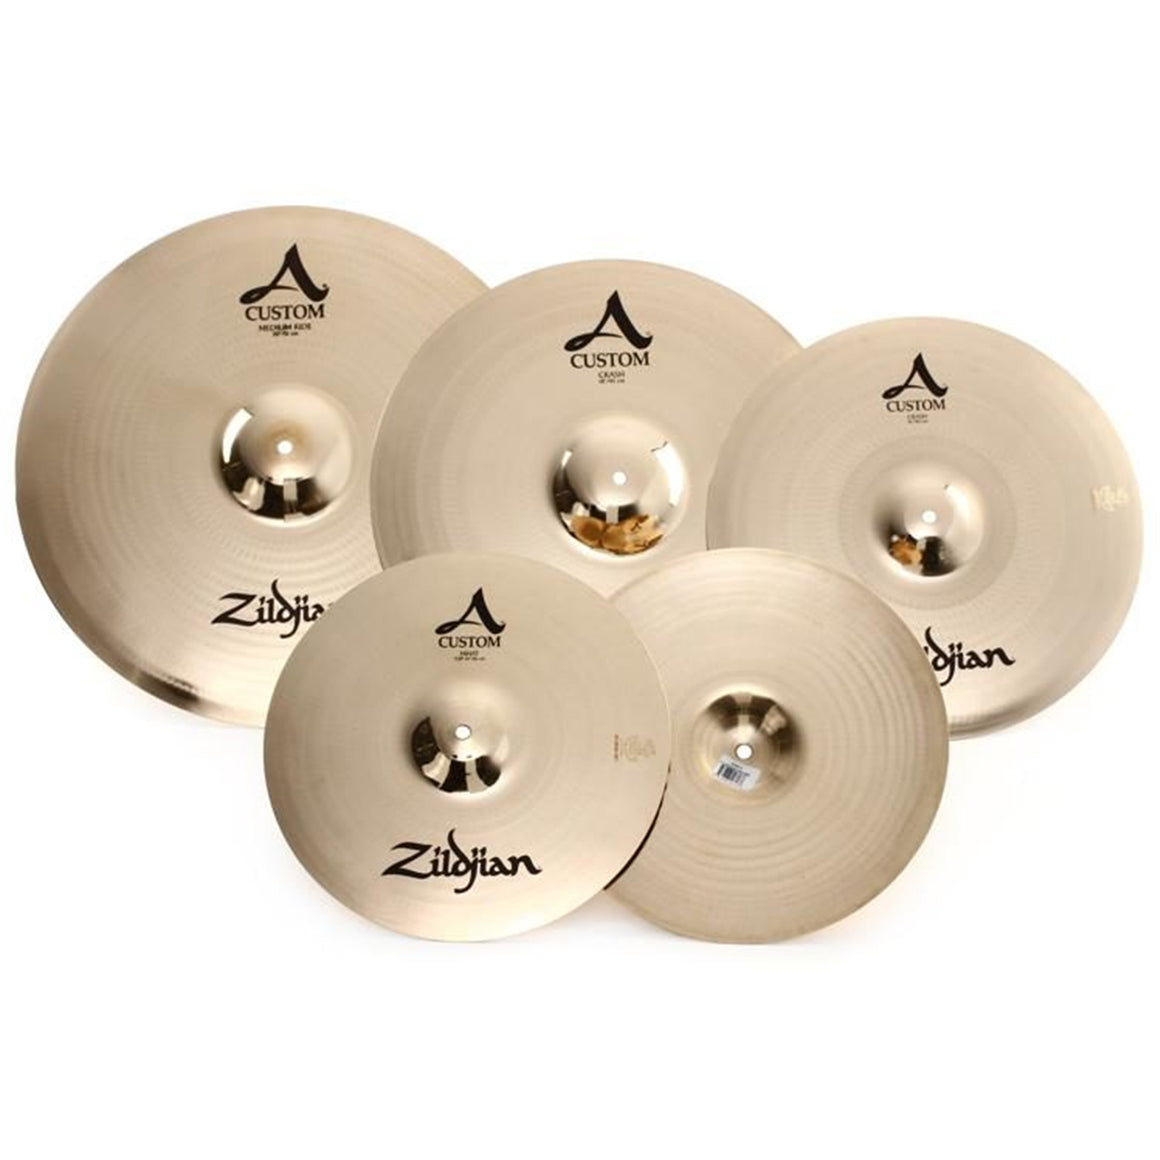 ZILDJIAN A2057911 A Custom 4-Pack Cast Bronze Cymbals (14,16,18,20") with Bag